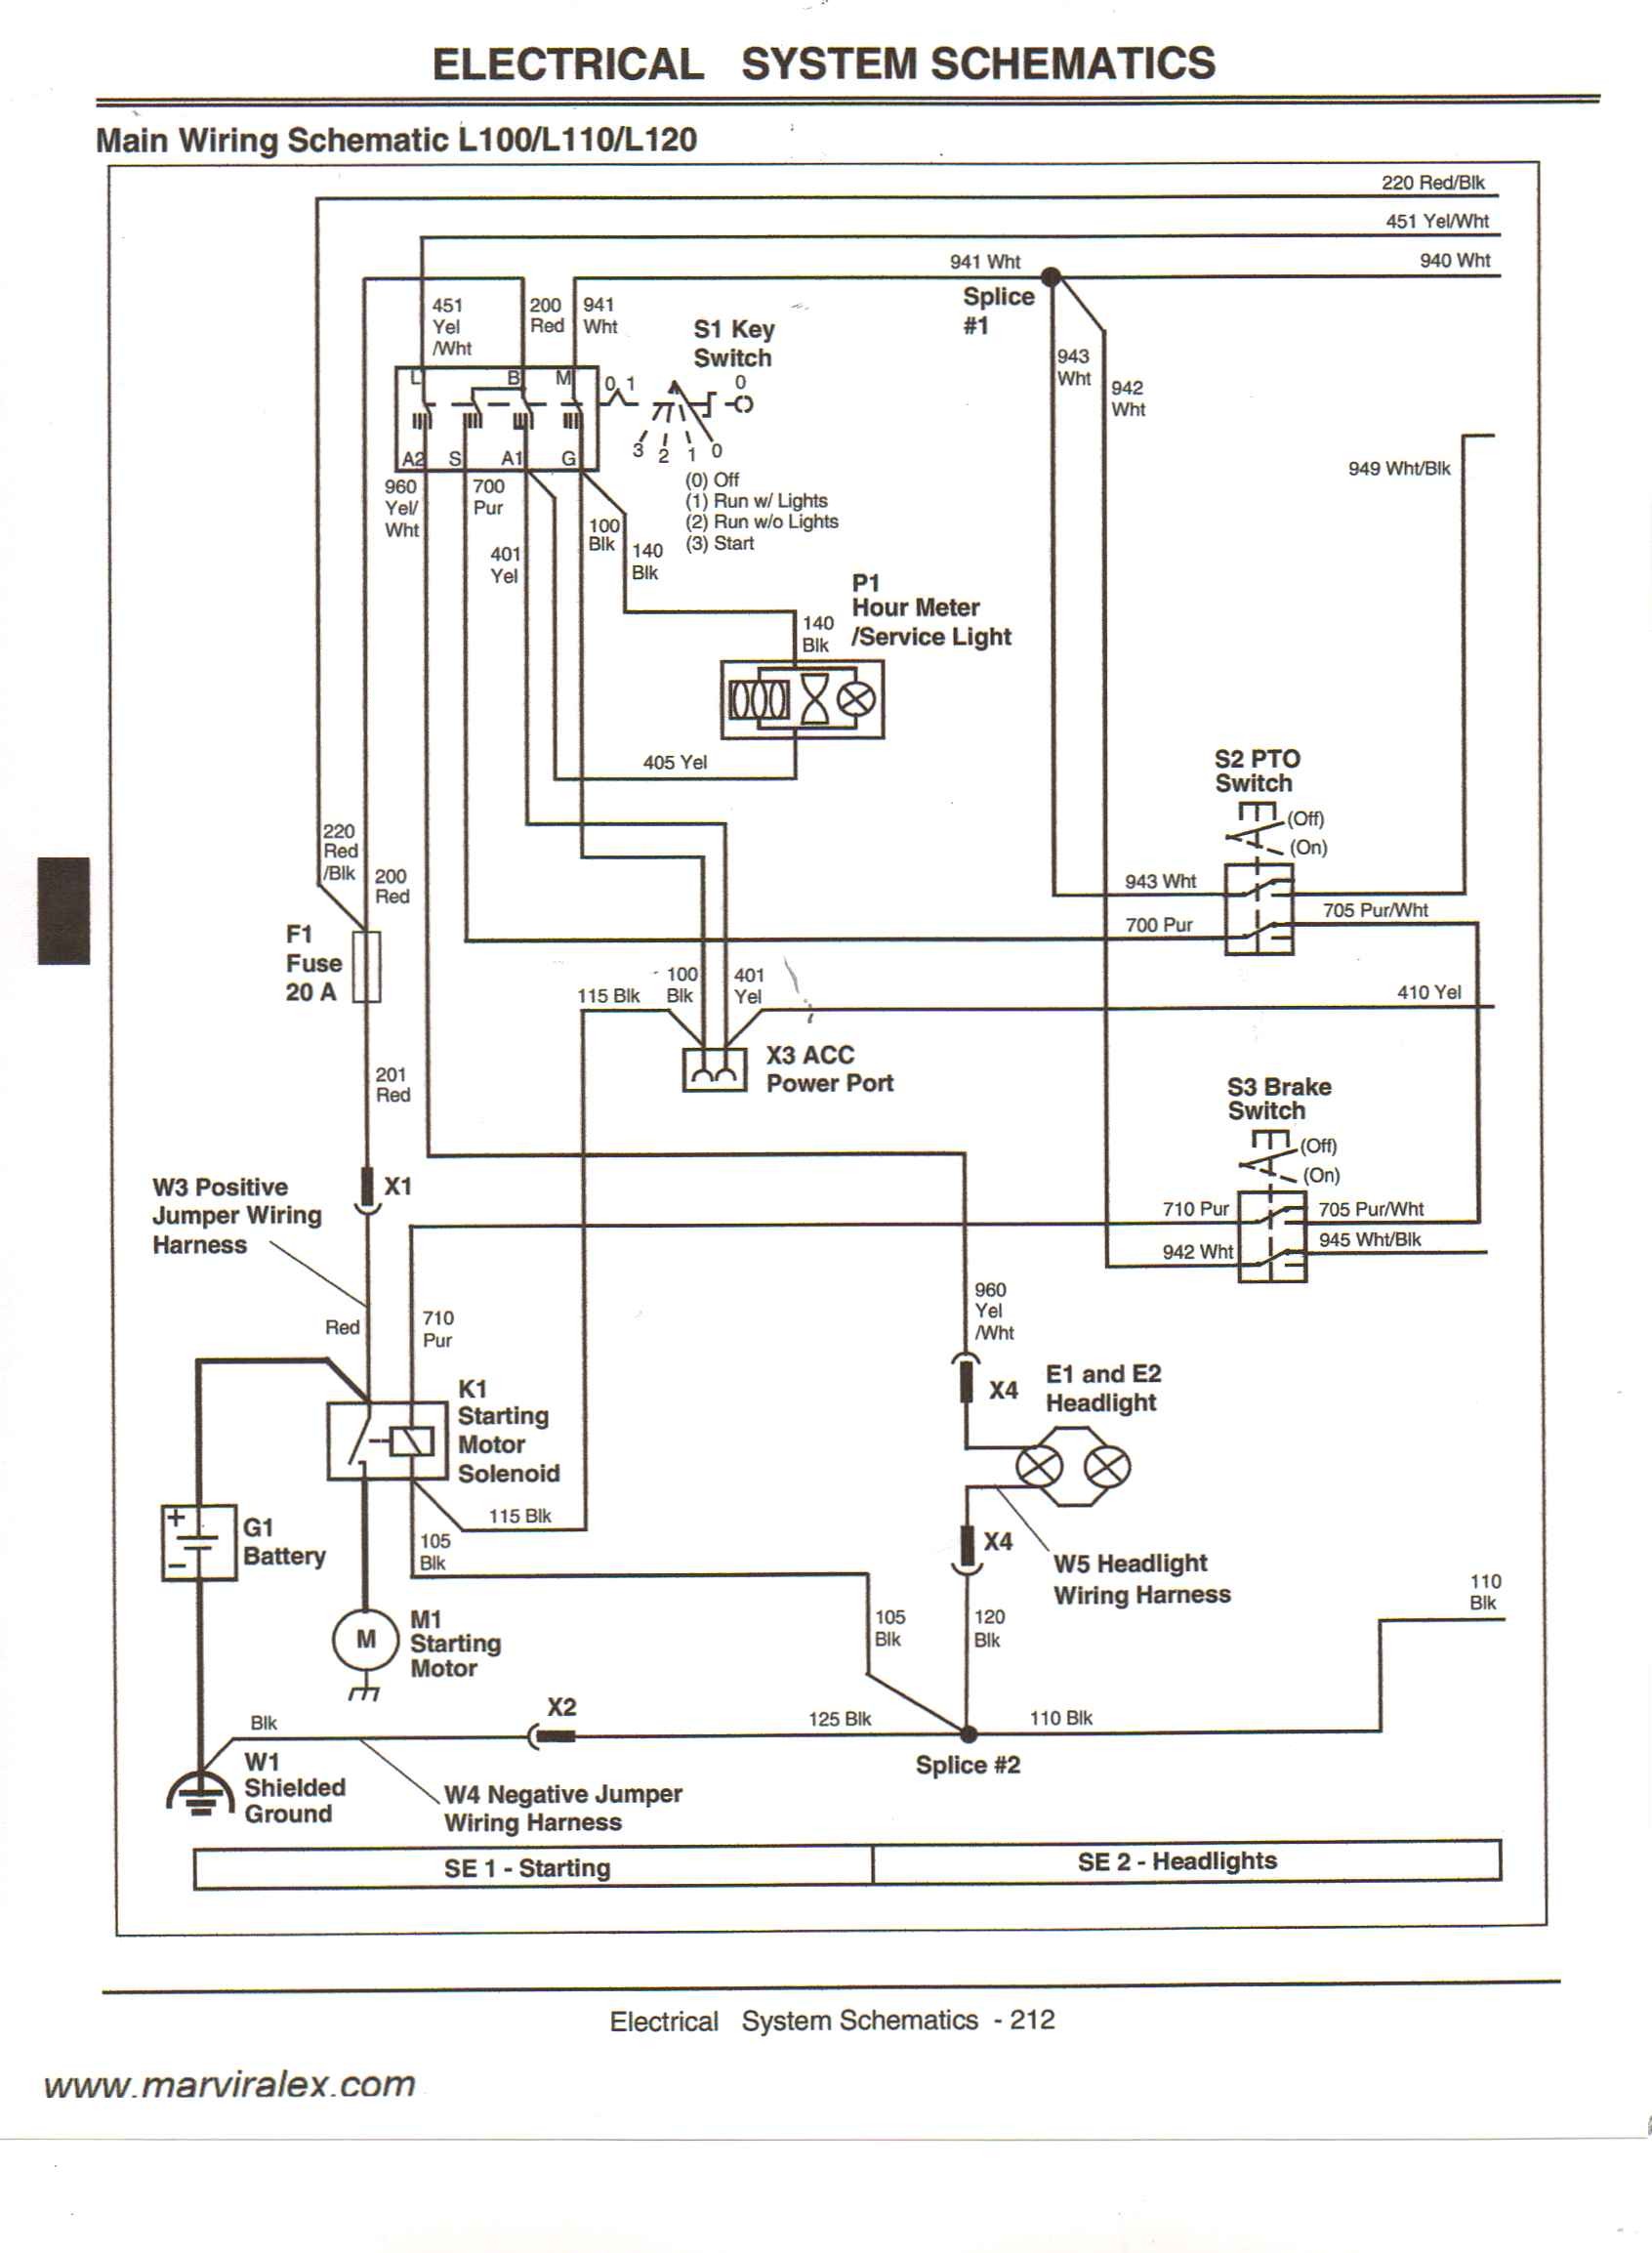 Z225 Wiring Diagram Data Wiring Diagram John Deere Wiring Harness Diagram John Deere Z225 Wiring Diagram